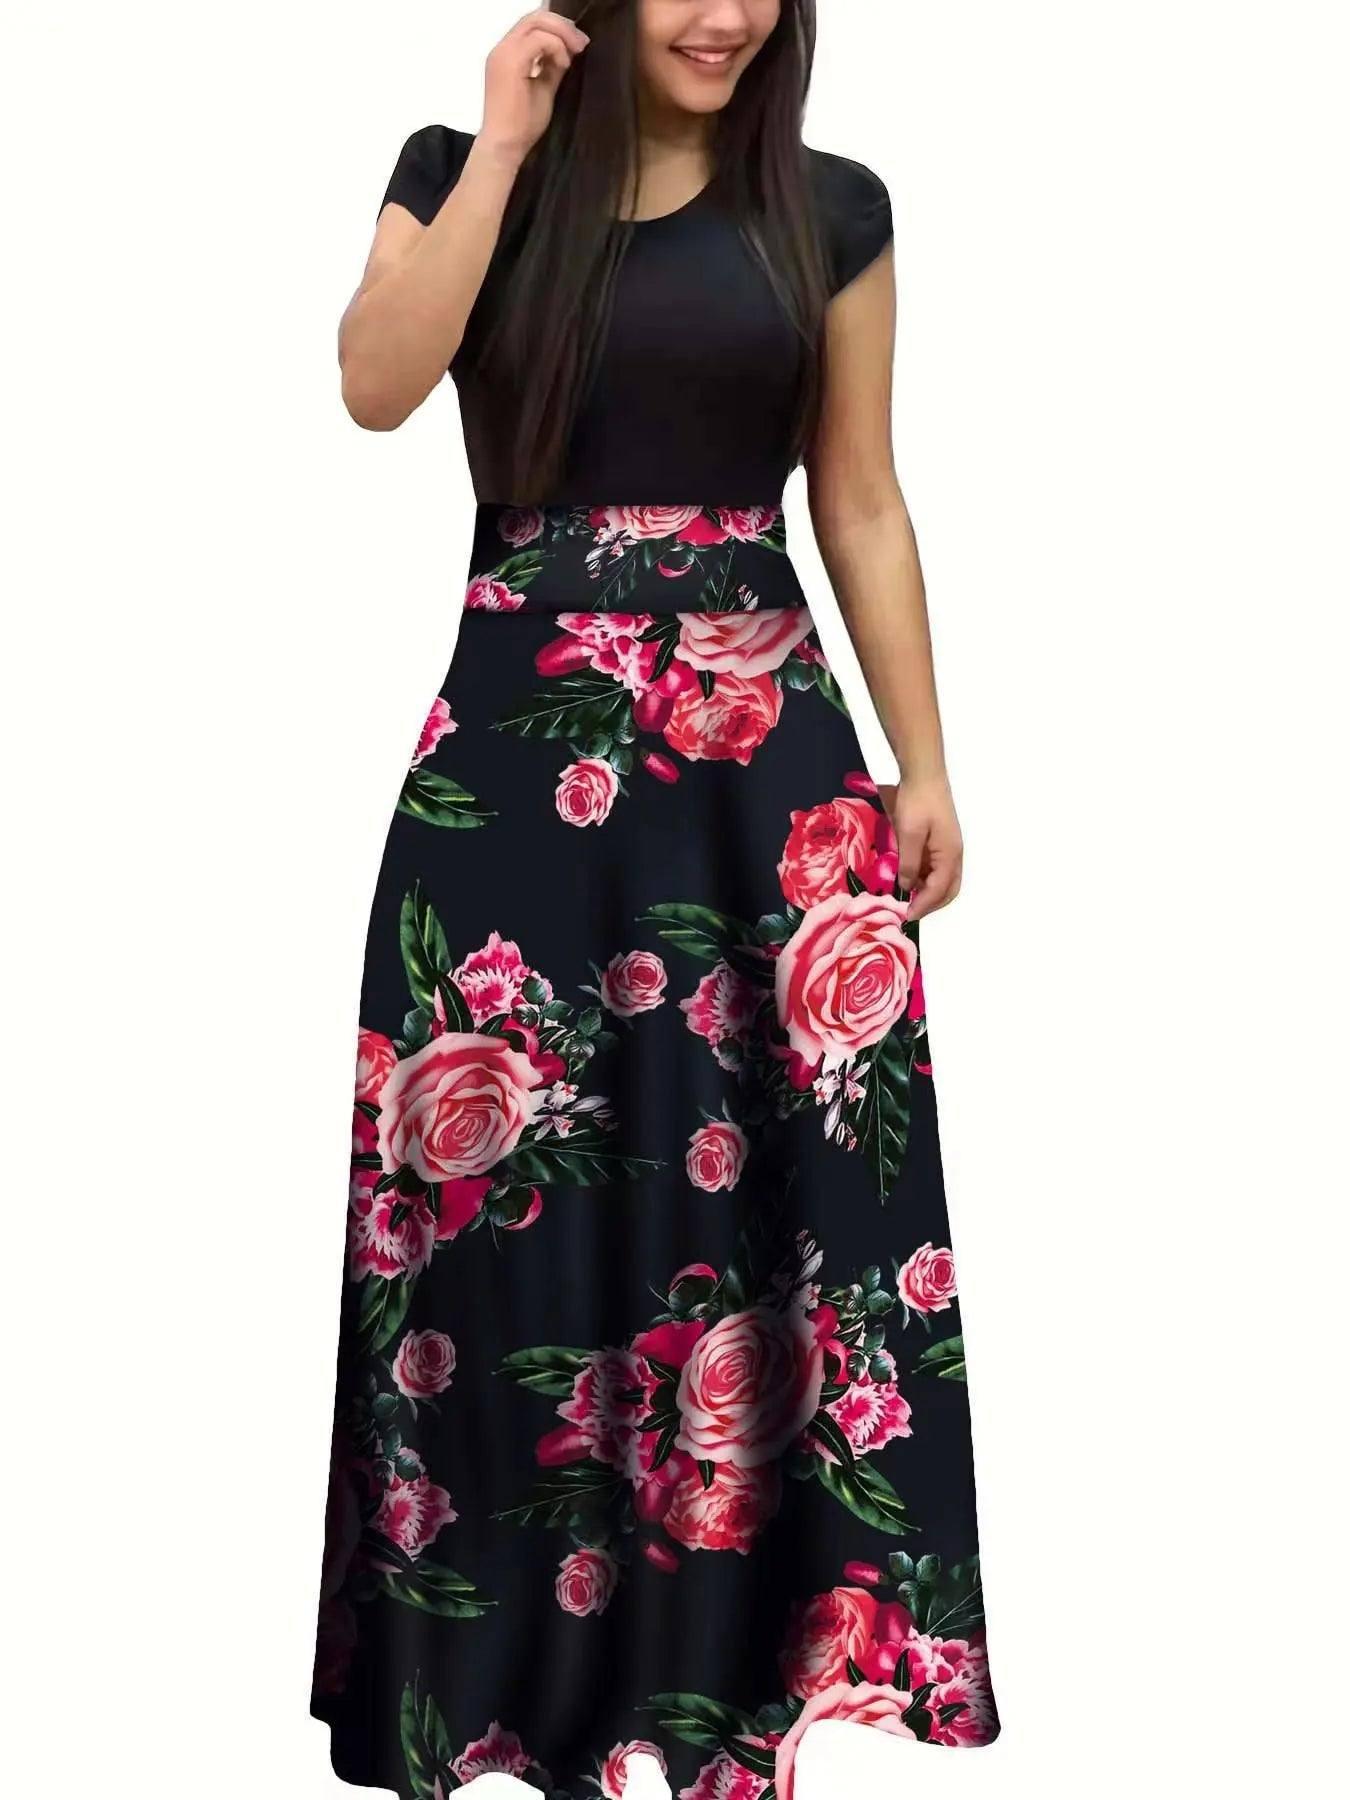 Elegant Floral Maxi Dress for Spring Events-3